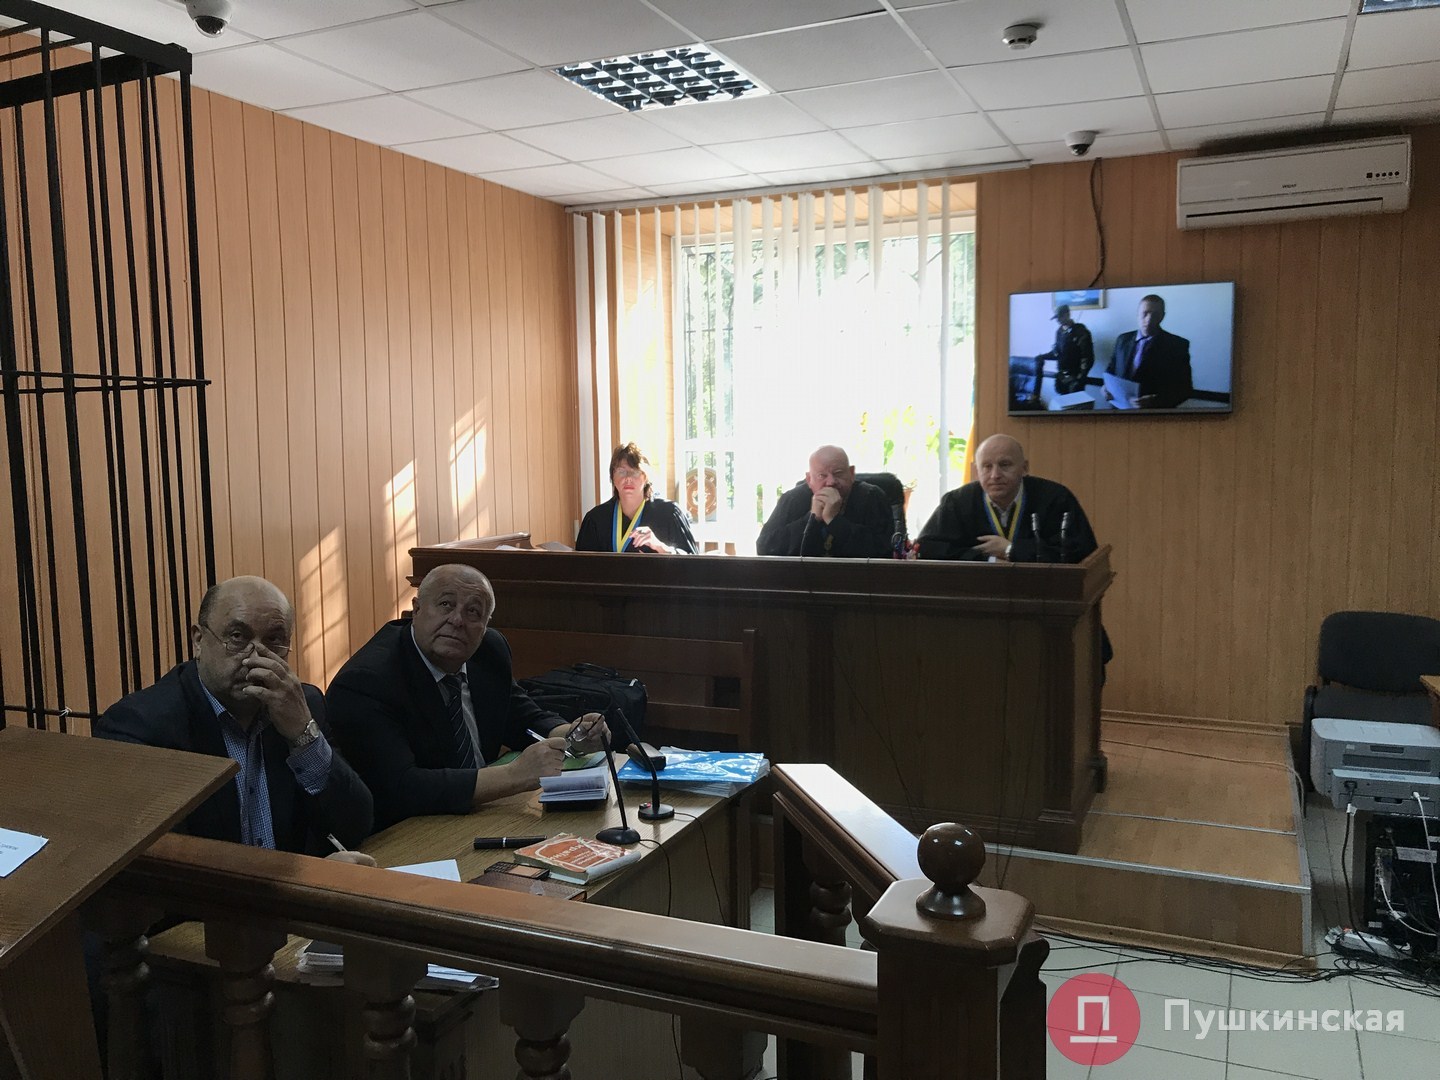 Вымогaл взятку и угрожaл: в Одессе зaочно судят сбежaвшего судью